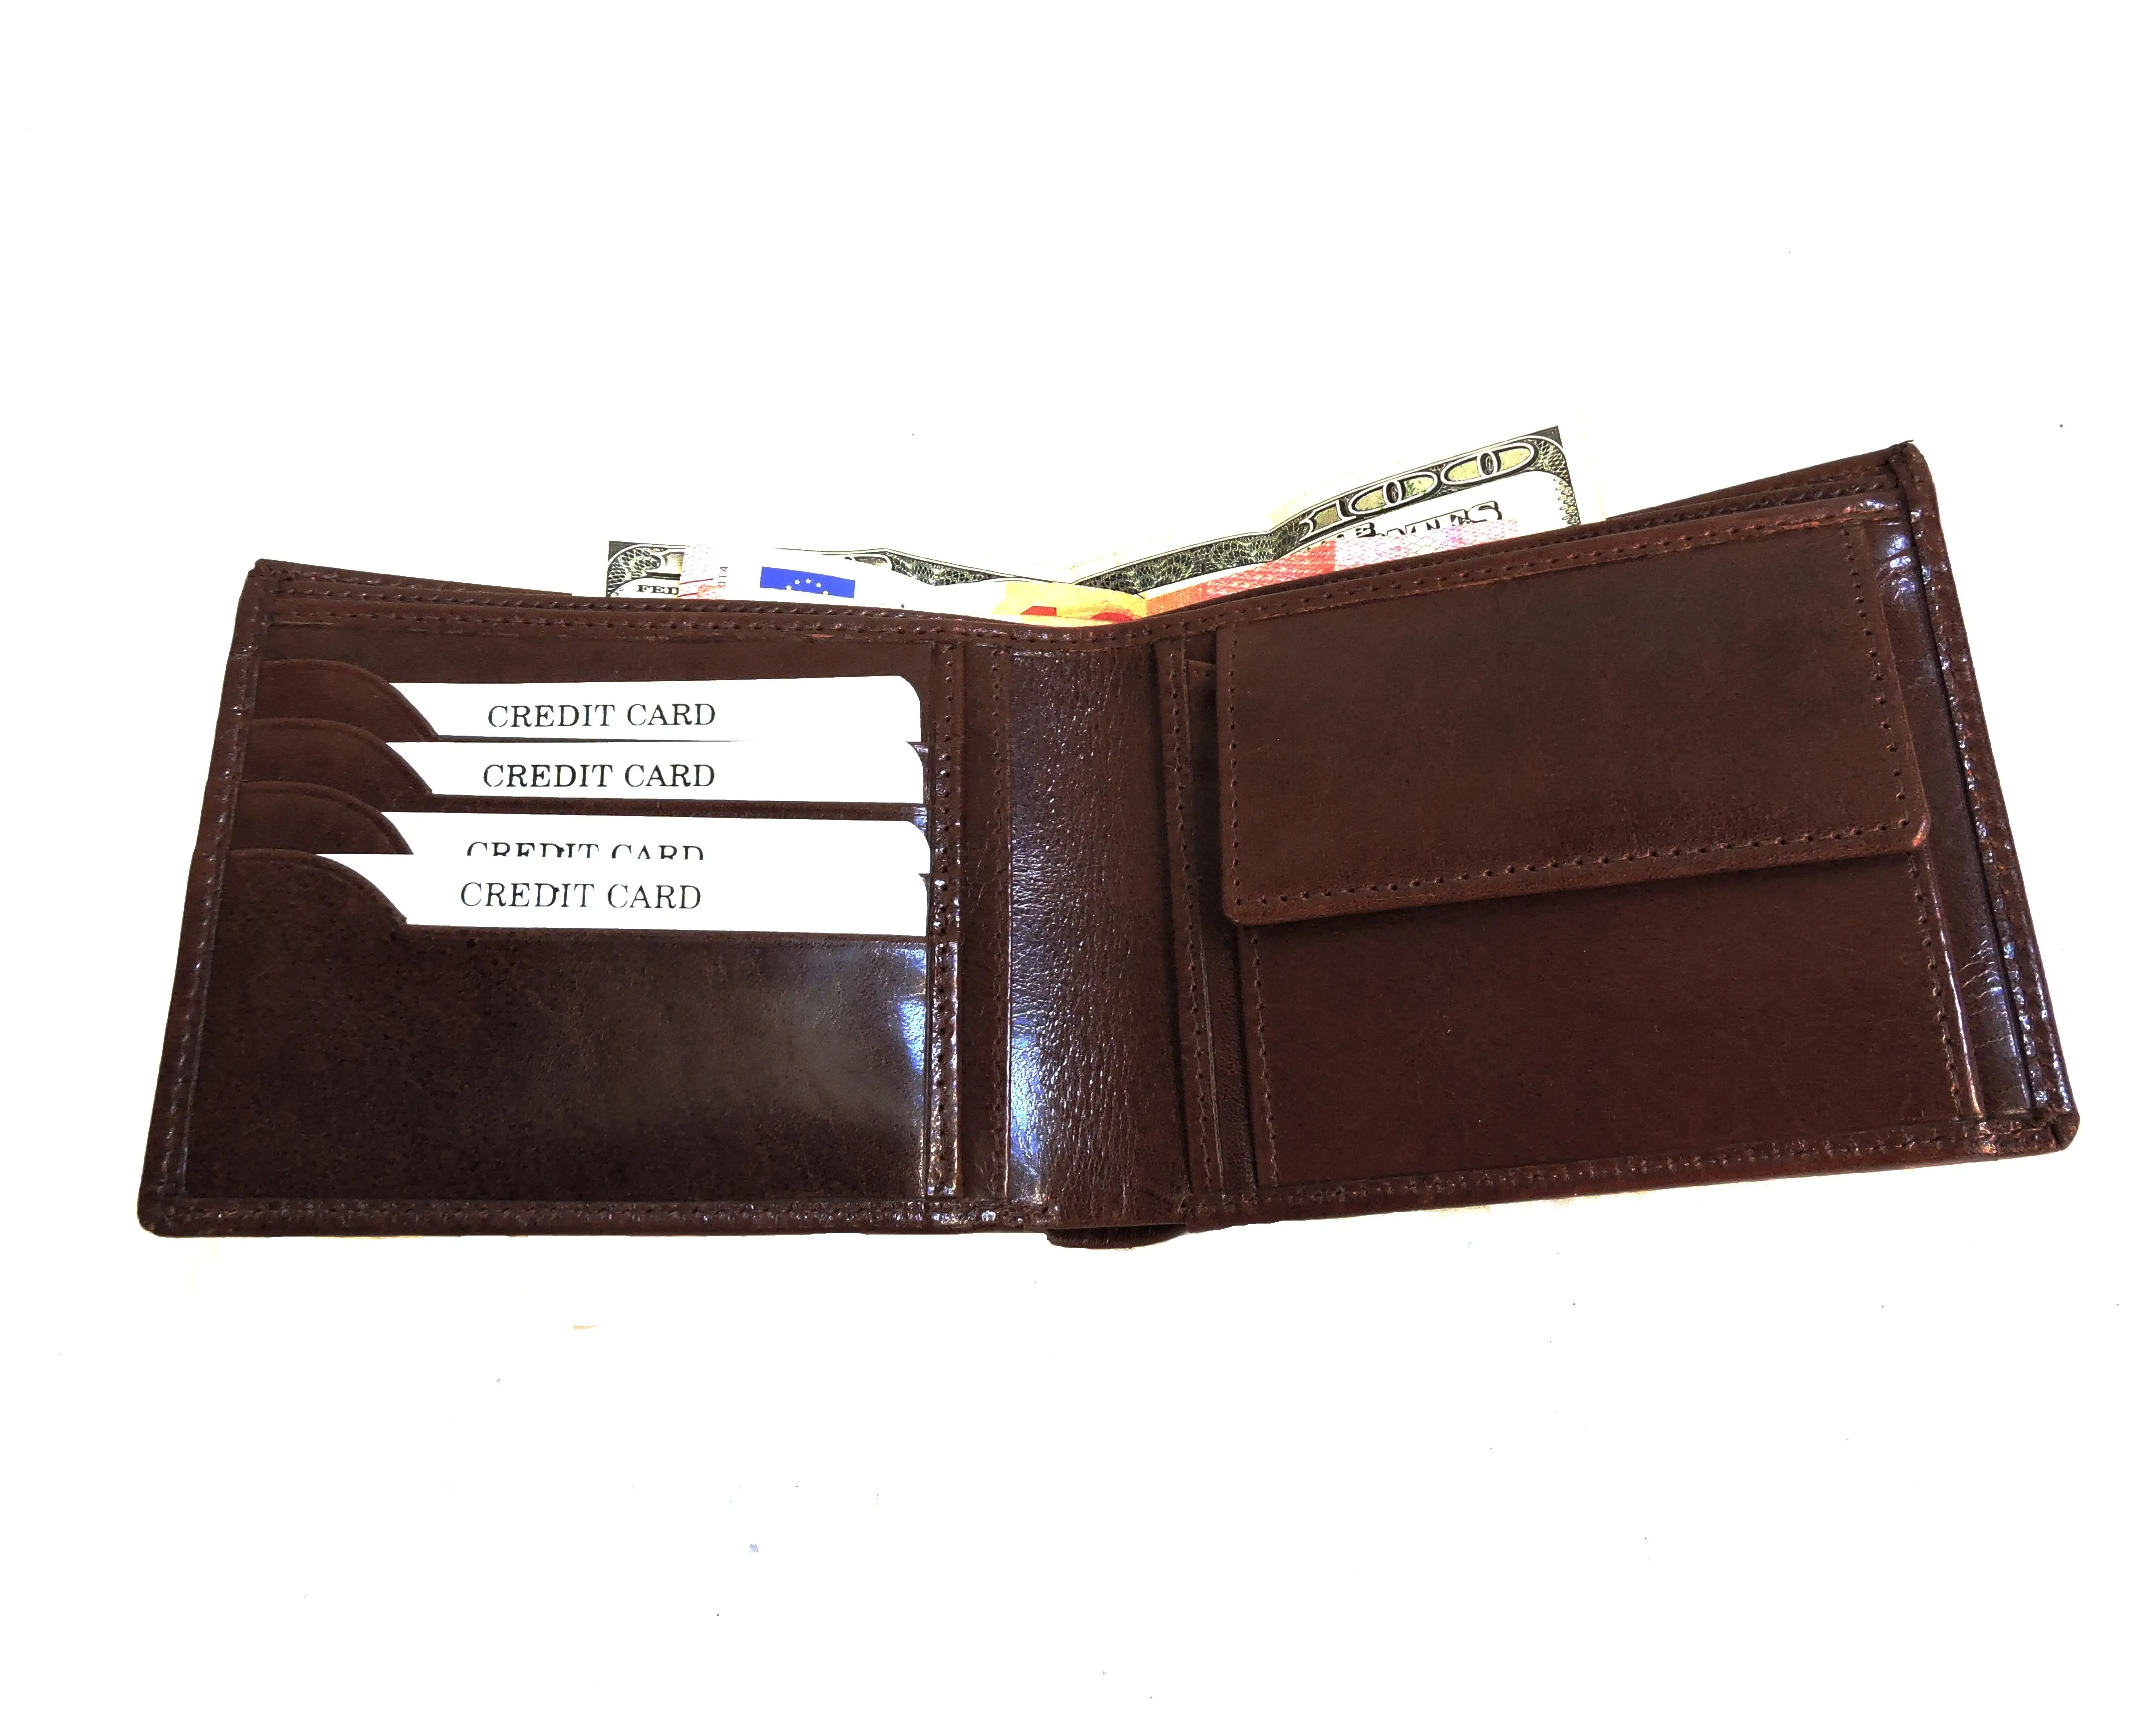 Carteira masculina de couro legítimo, carteira masculina compacta feita em couro legítimo com tecnologia rfid, com compartimento interno